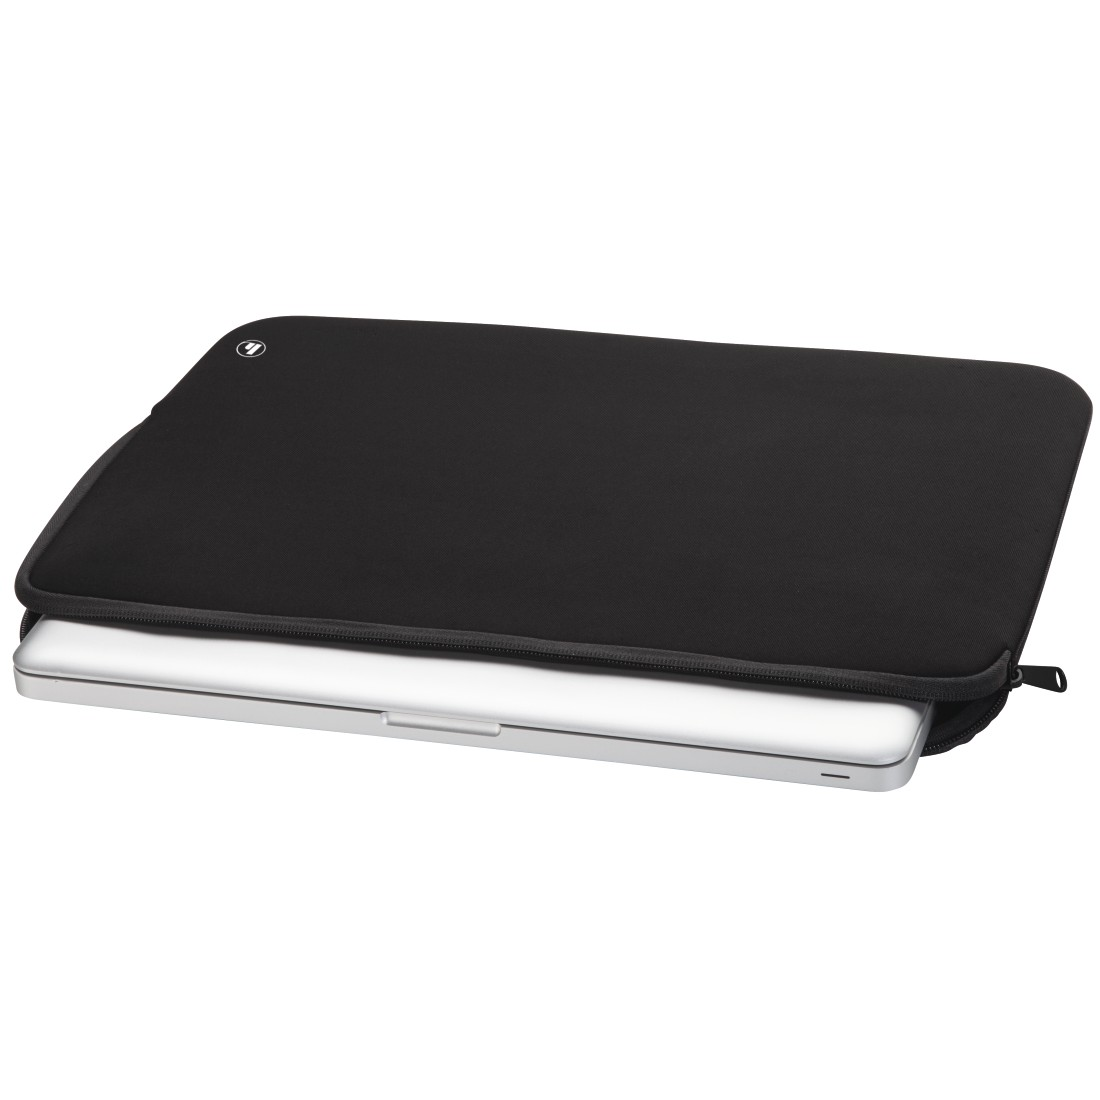 Sleeve 14.1 HAMA Universal Schwarz Notebooktasche für Zoll Neopren, Neoprene